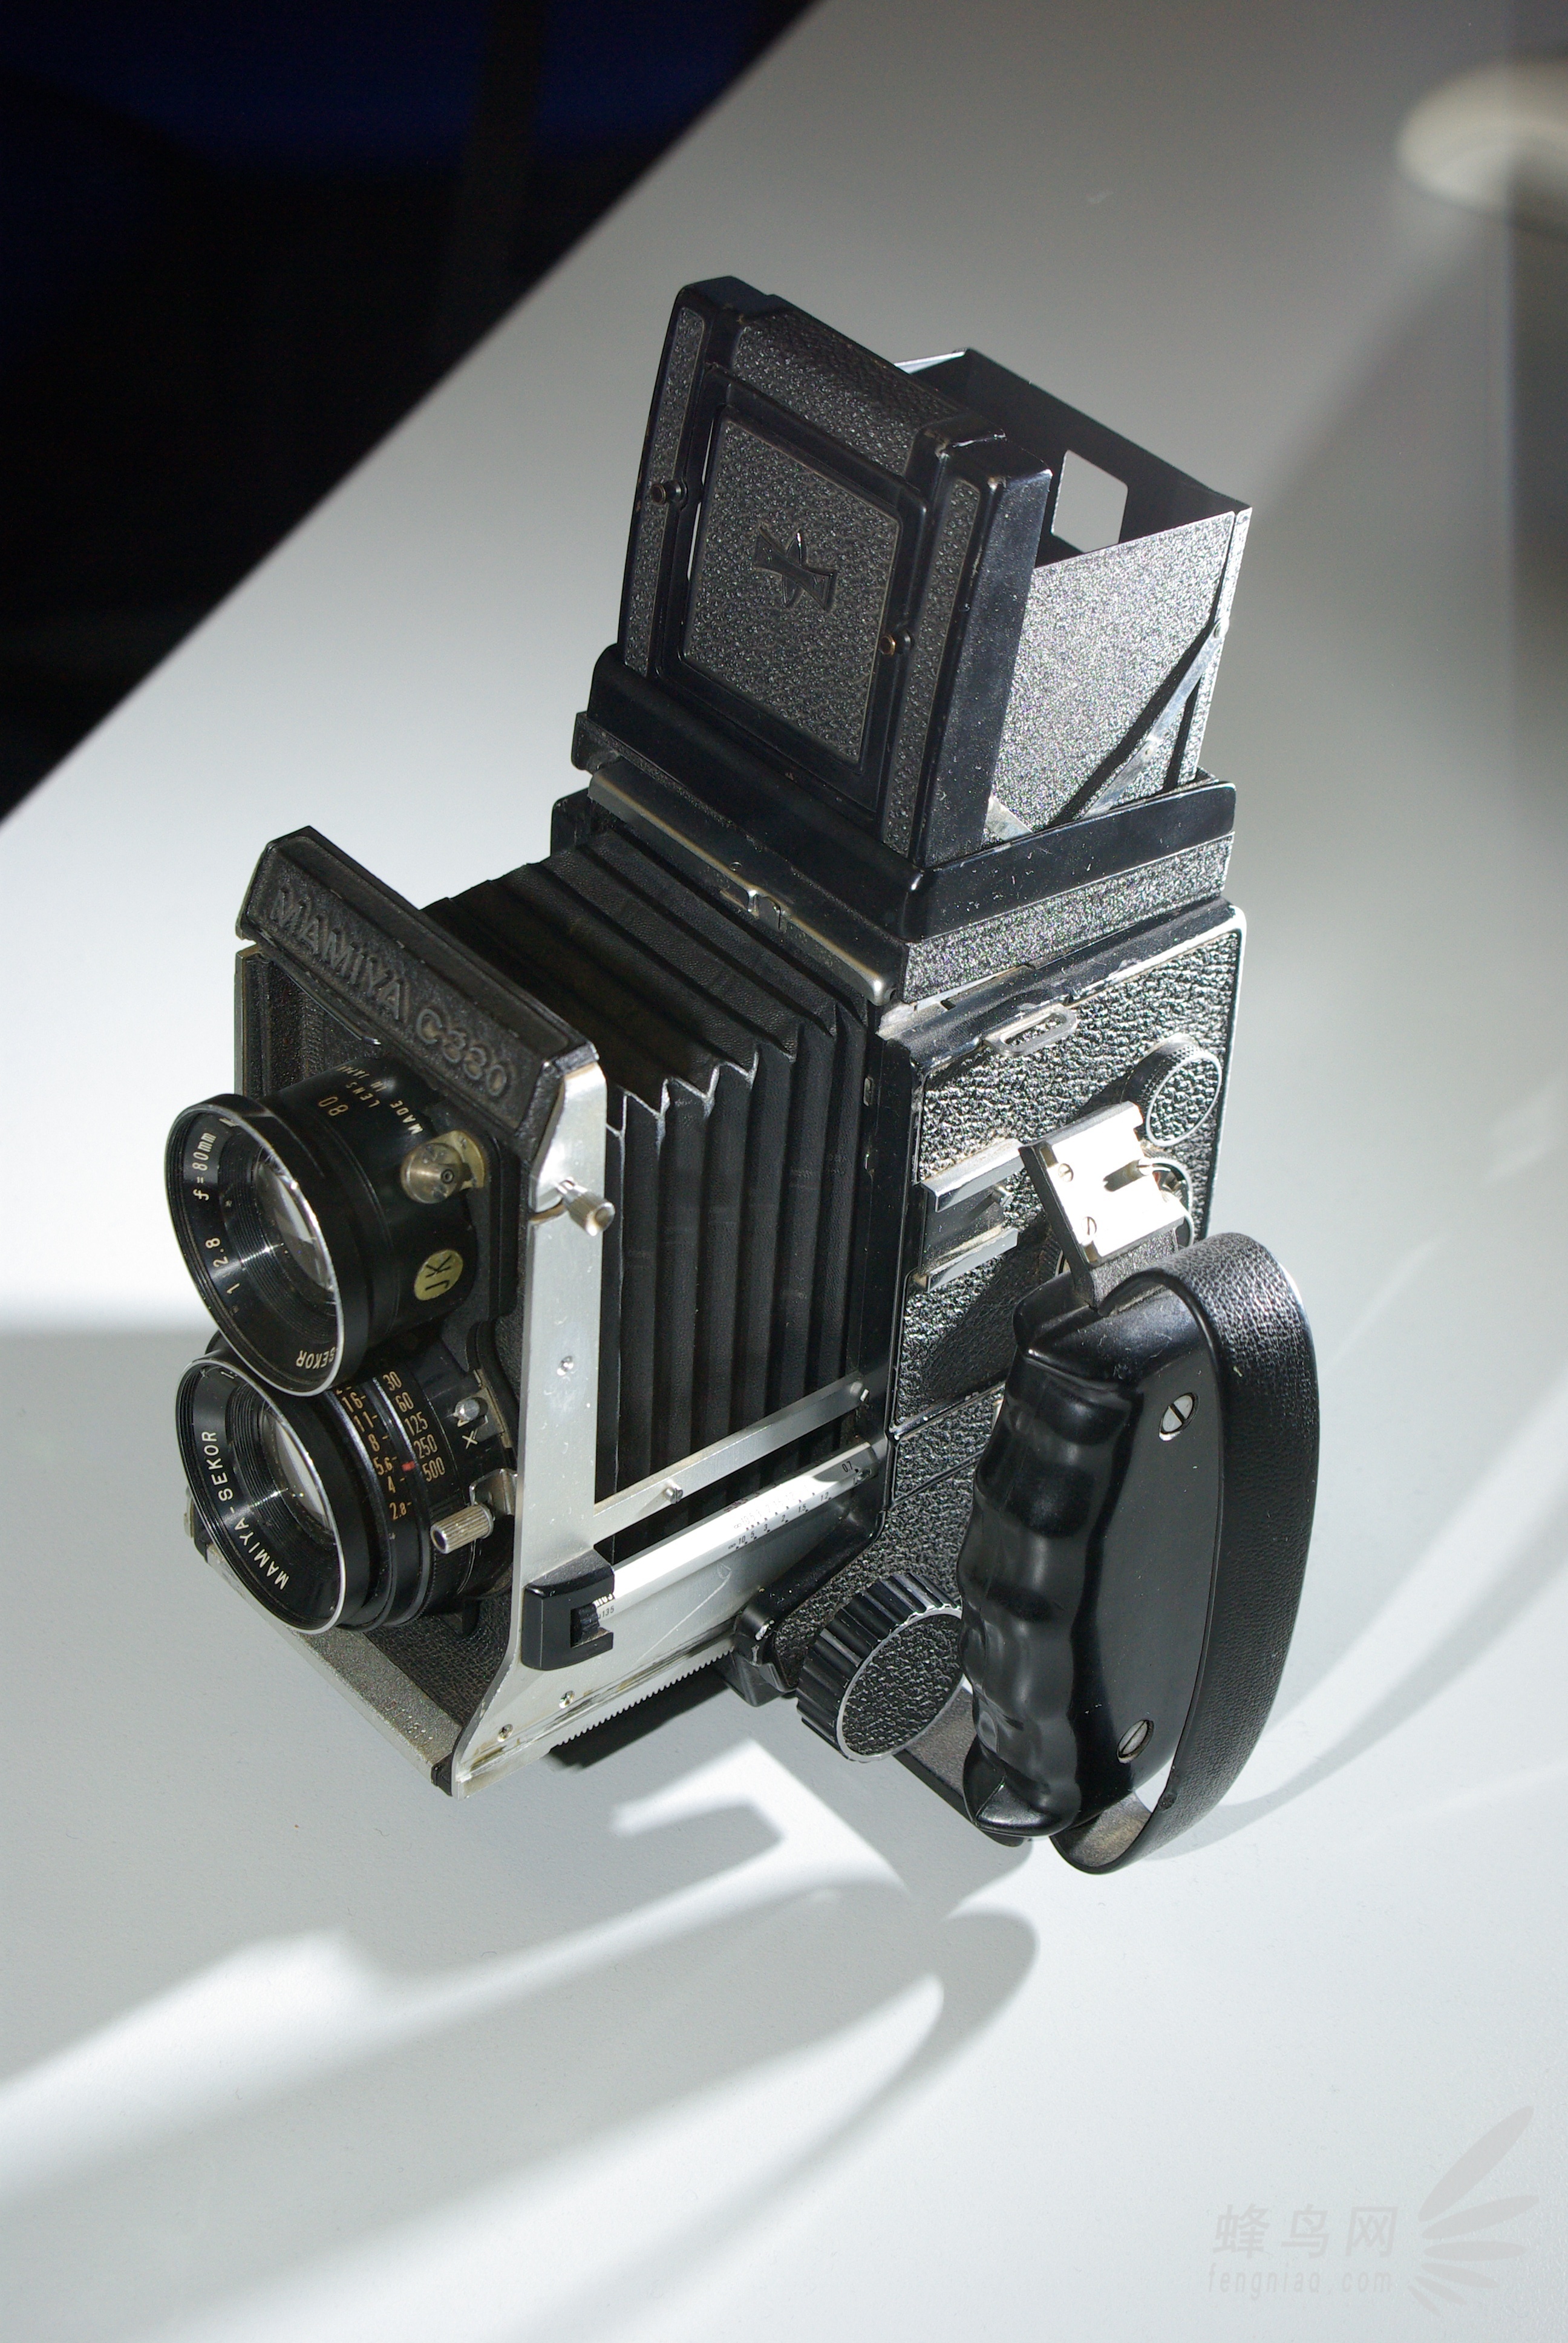 老炮儿也有青春 细数曾经辉煌的胶片相机